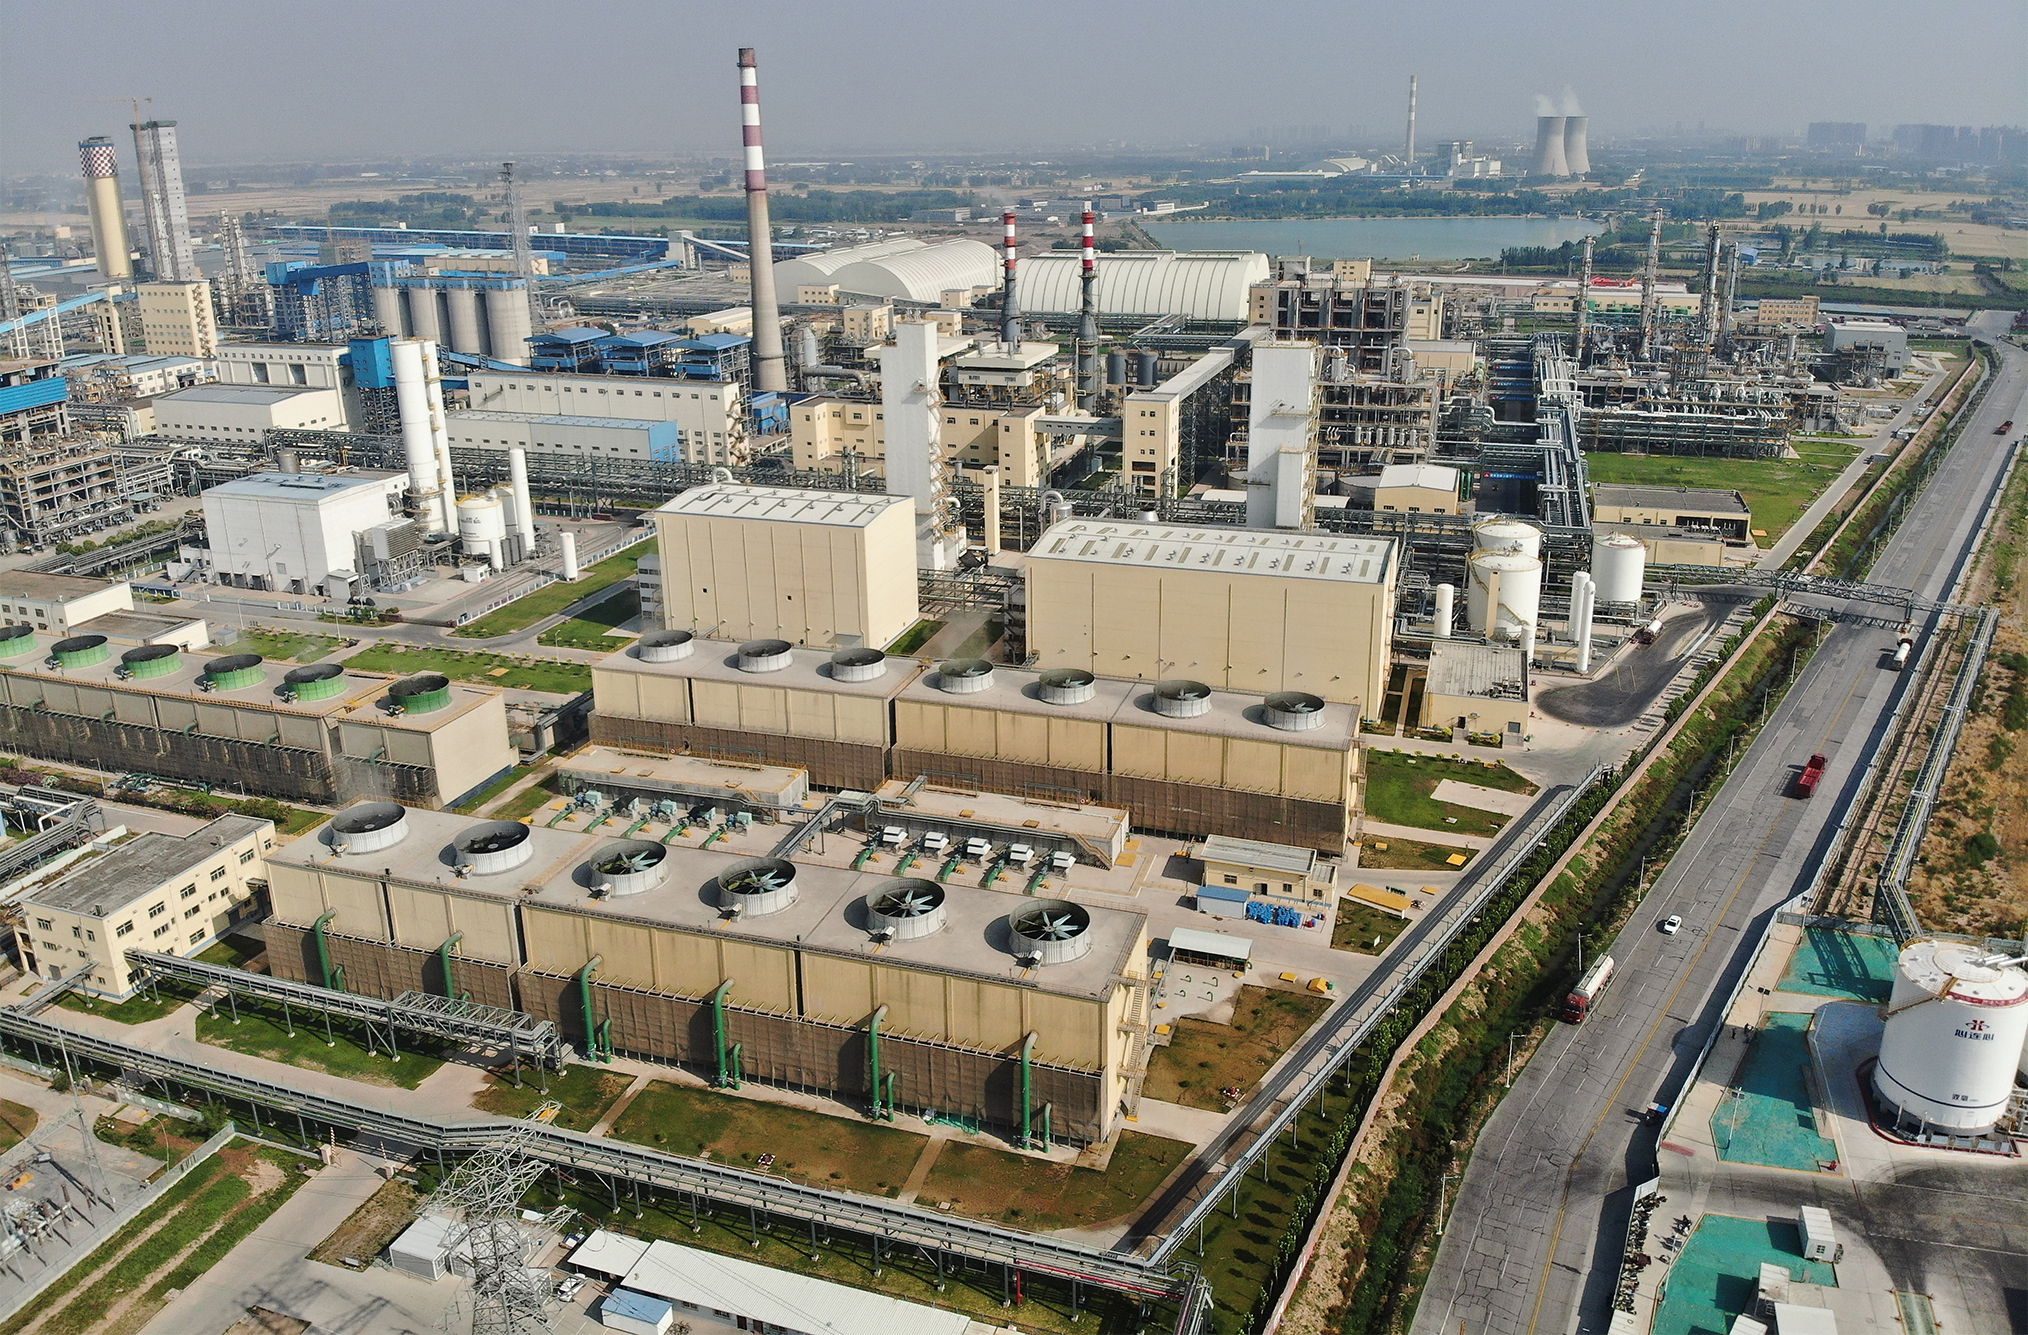 河南心連心化學工業集團股份有限公司采用清潔生產技術進行產業升級項目(一期)